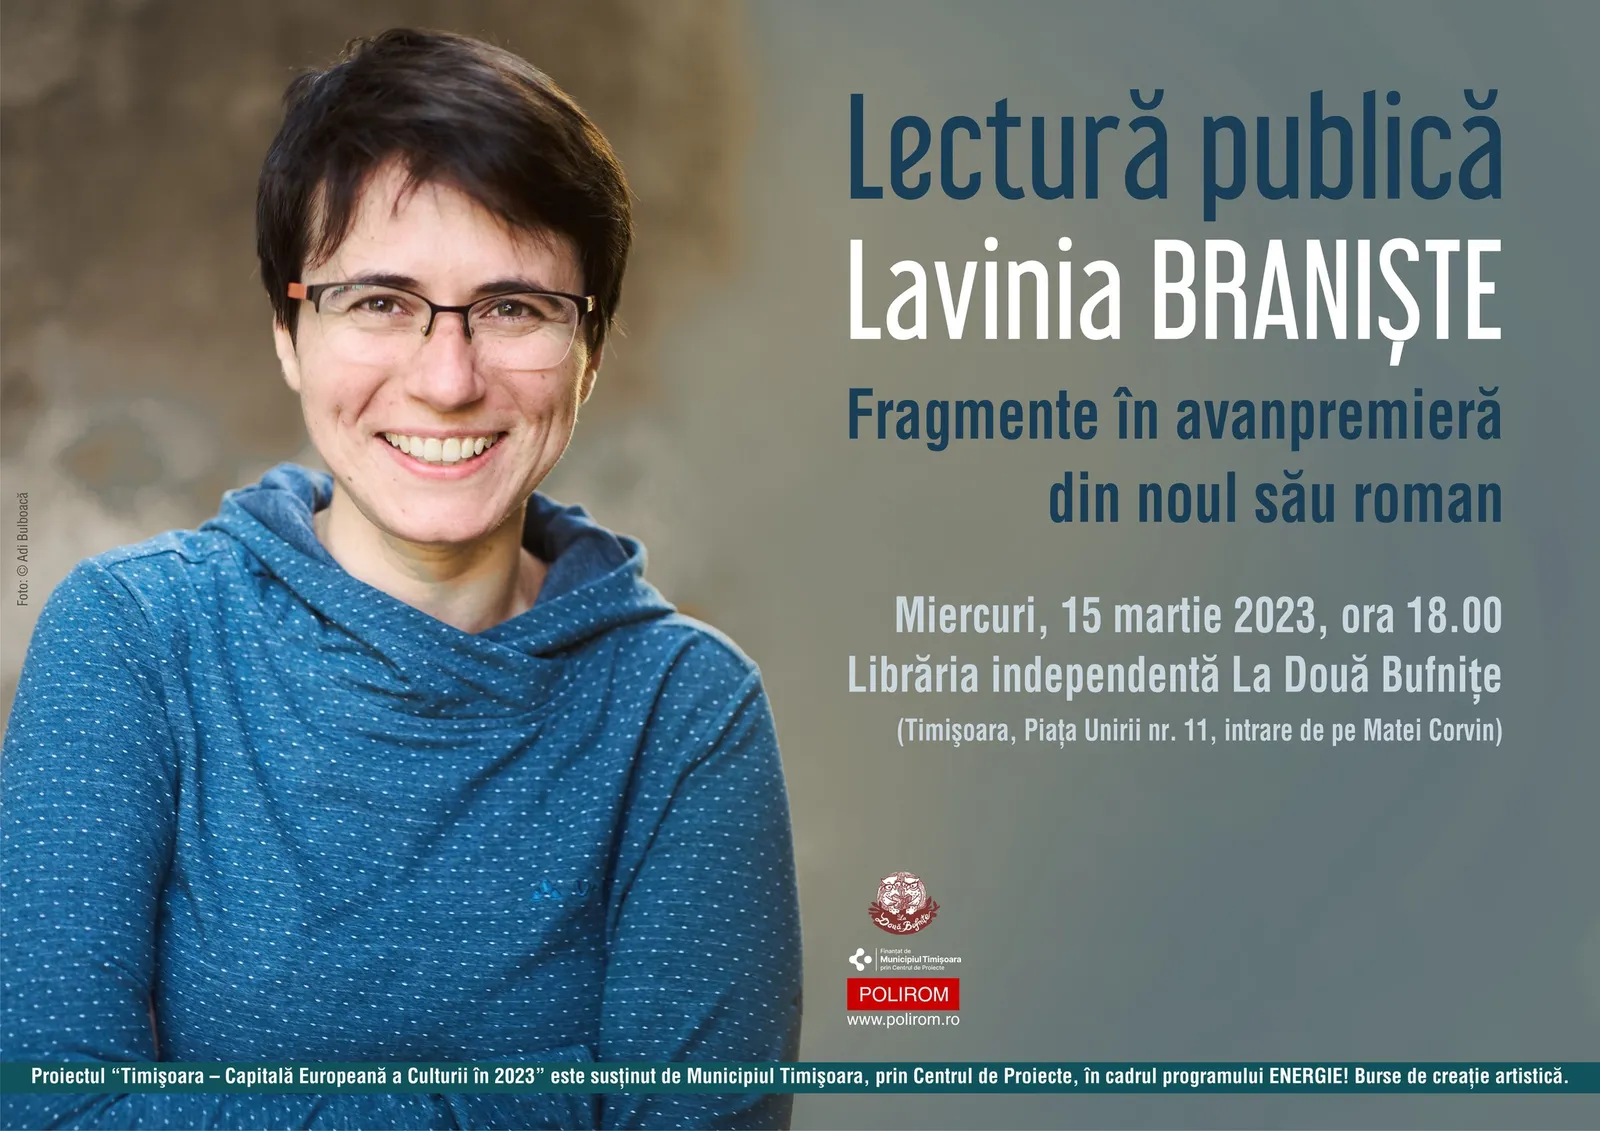 Lavinia Braniște, lectură publică din manuscris